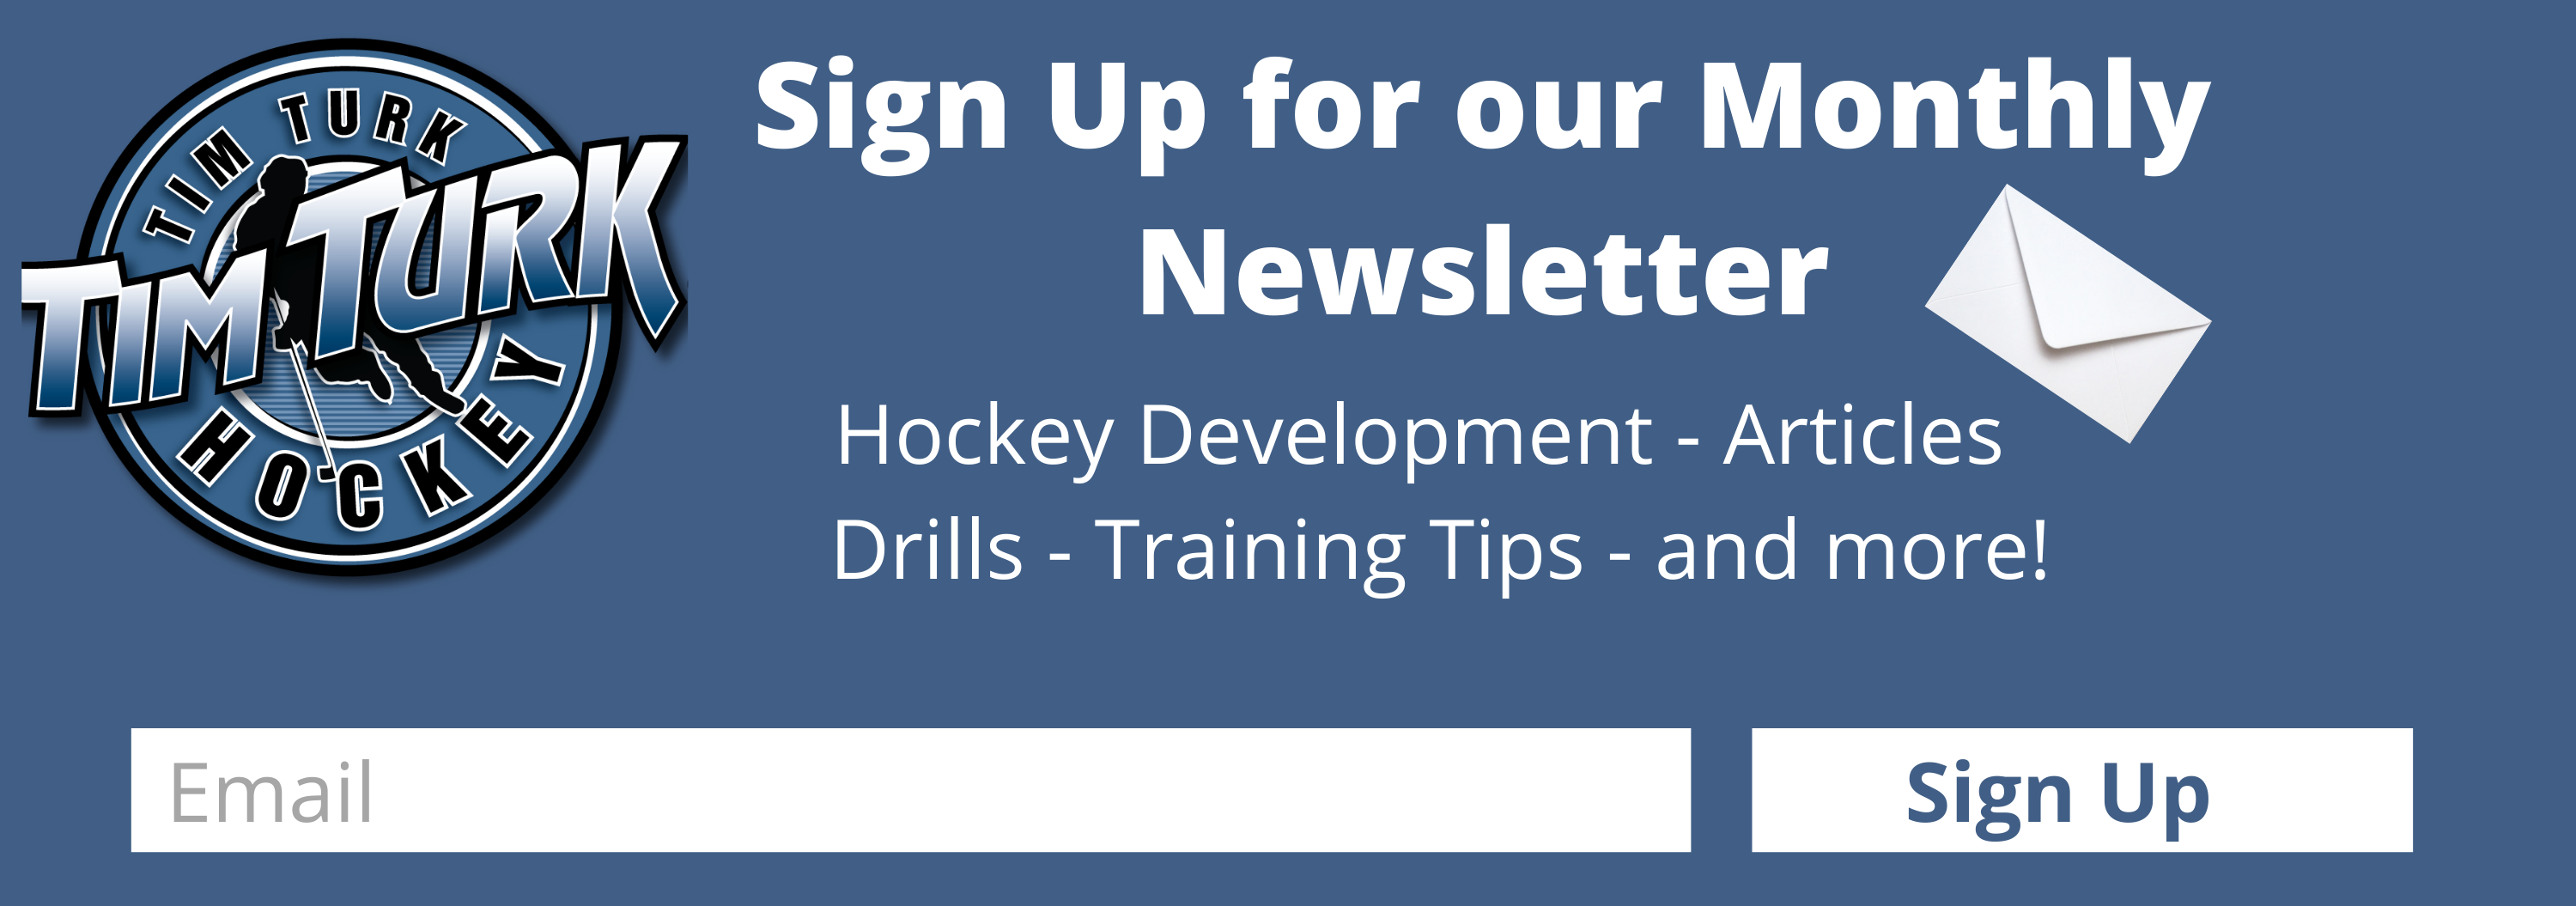 Tim Turk Hockey Newsletter Sign UP